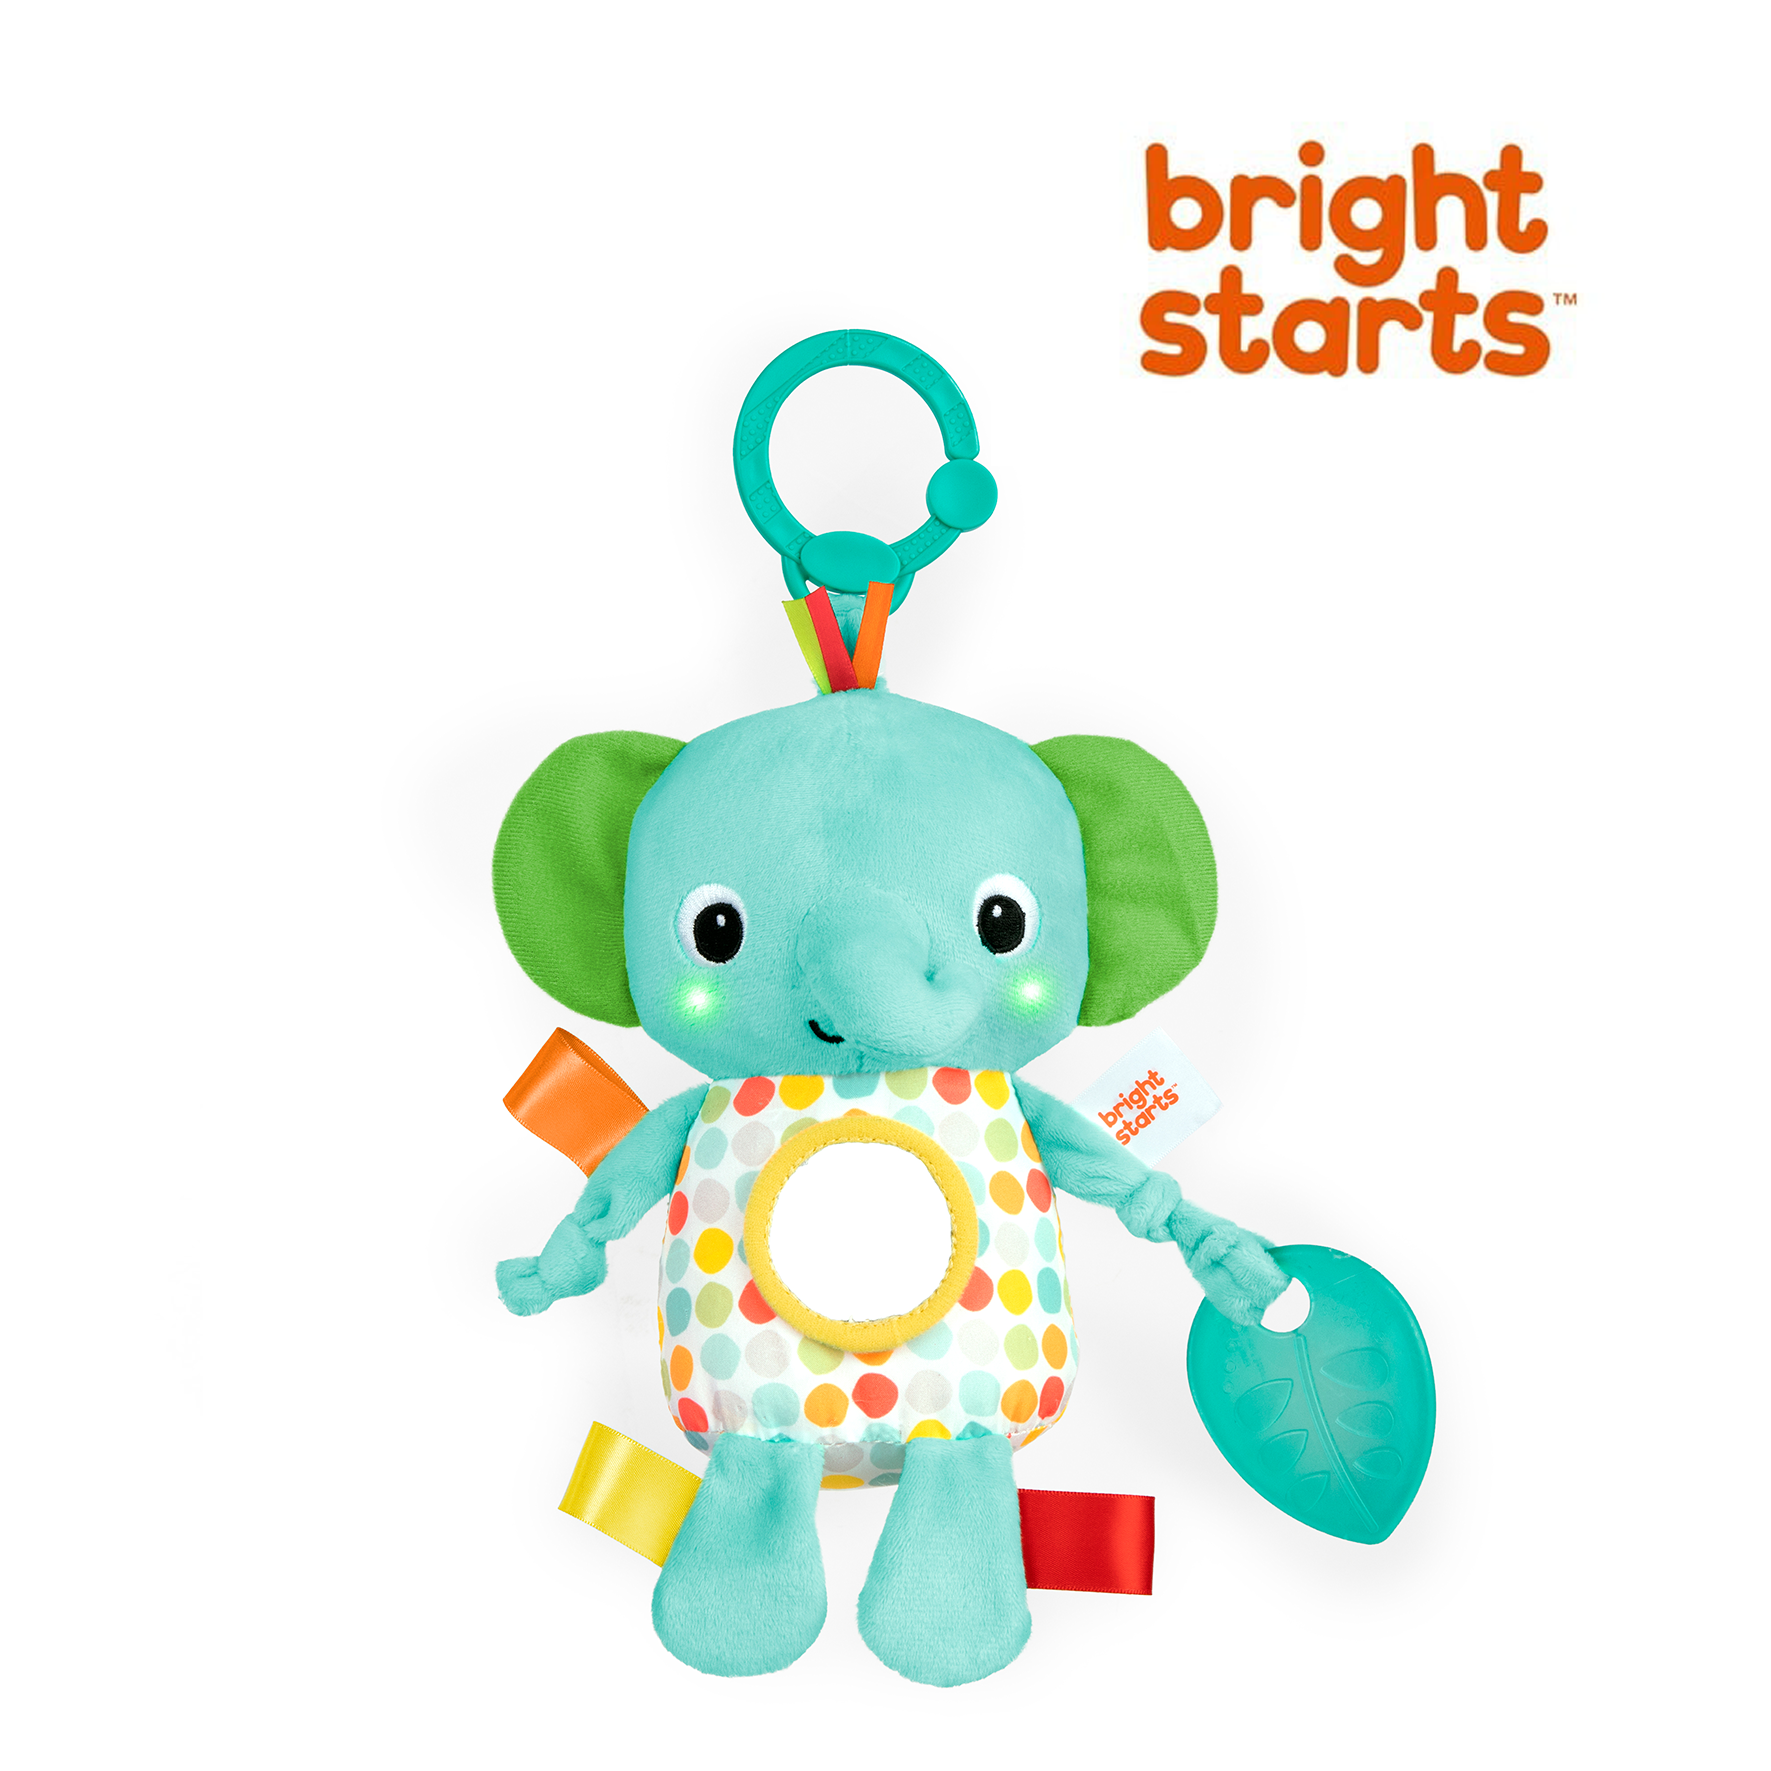 選べる試せる 育児用品・おもちゃのサブスク 「すくスク」 / bright